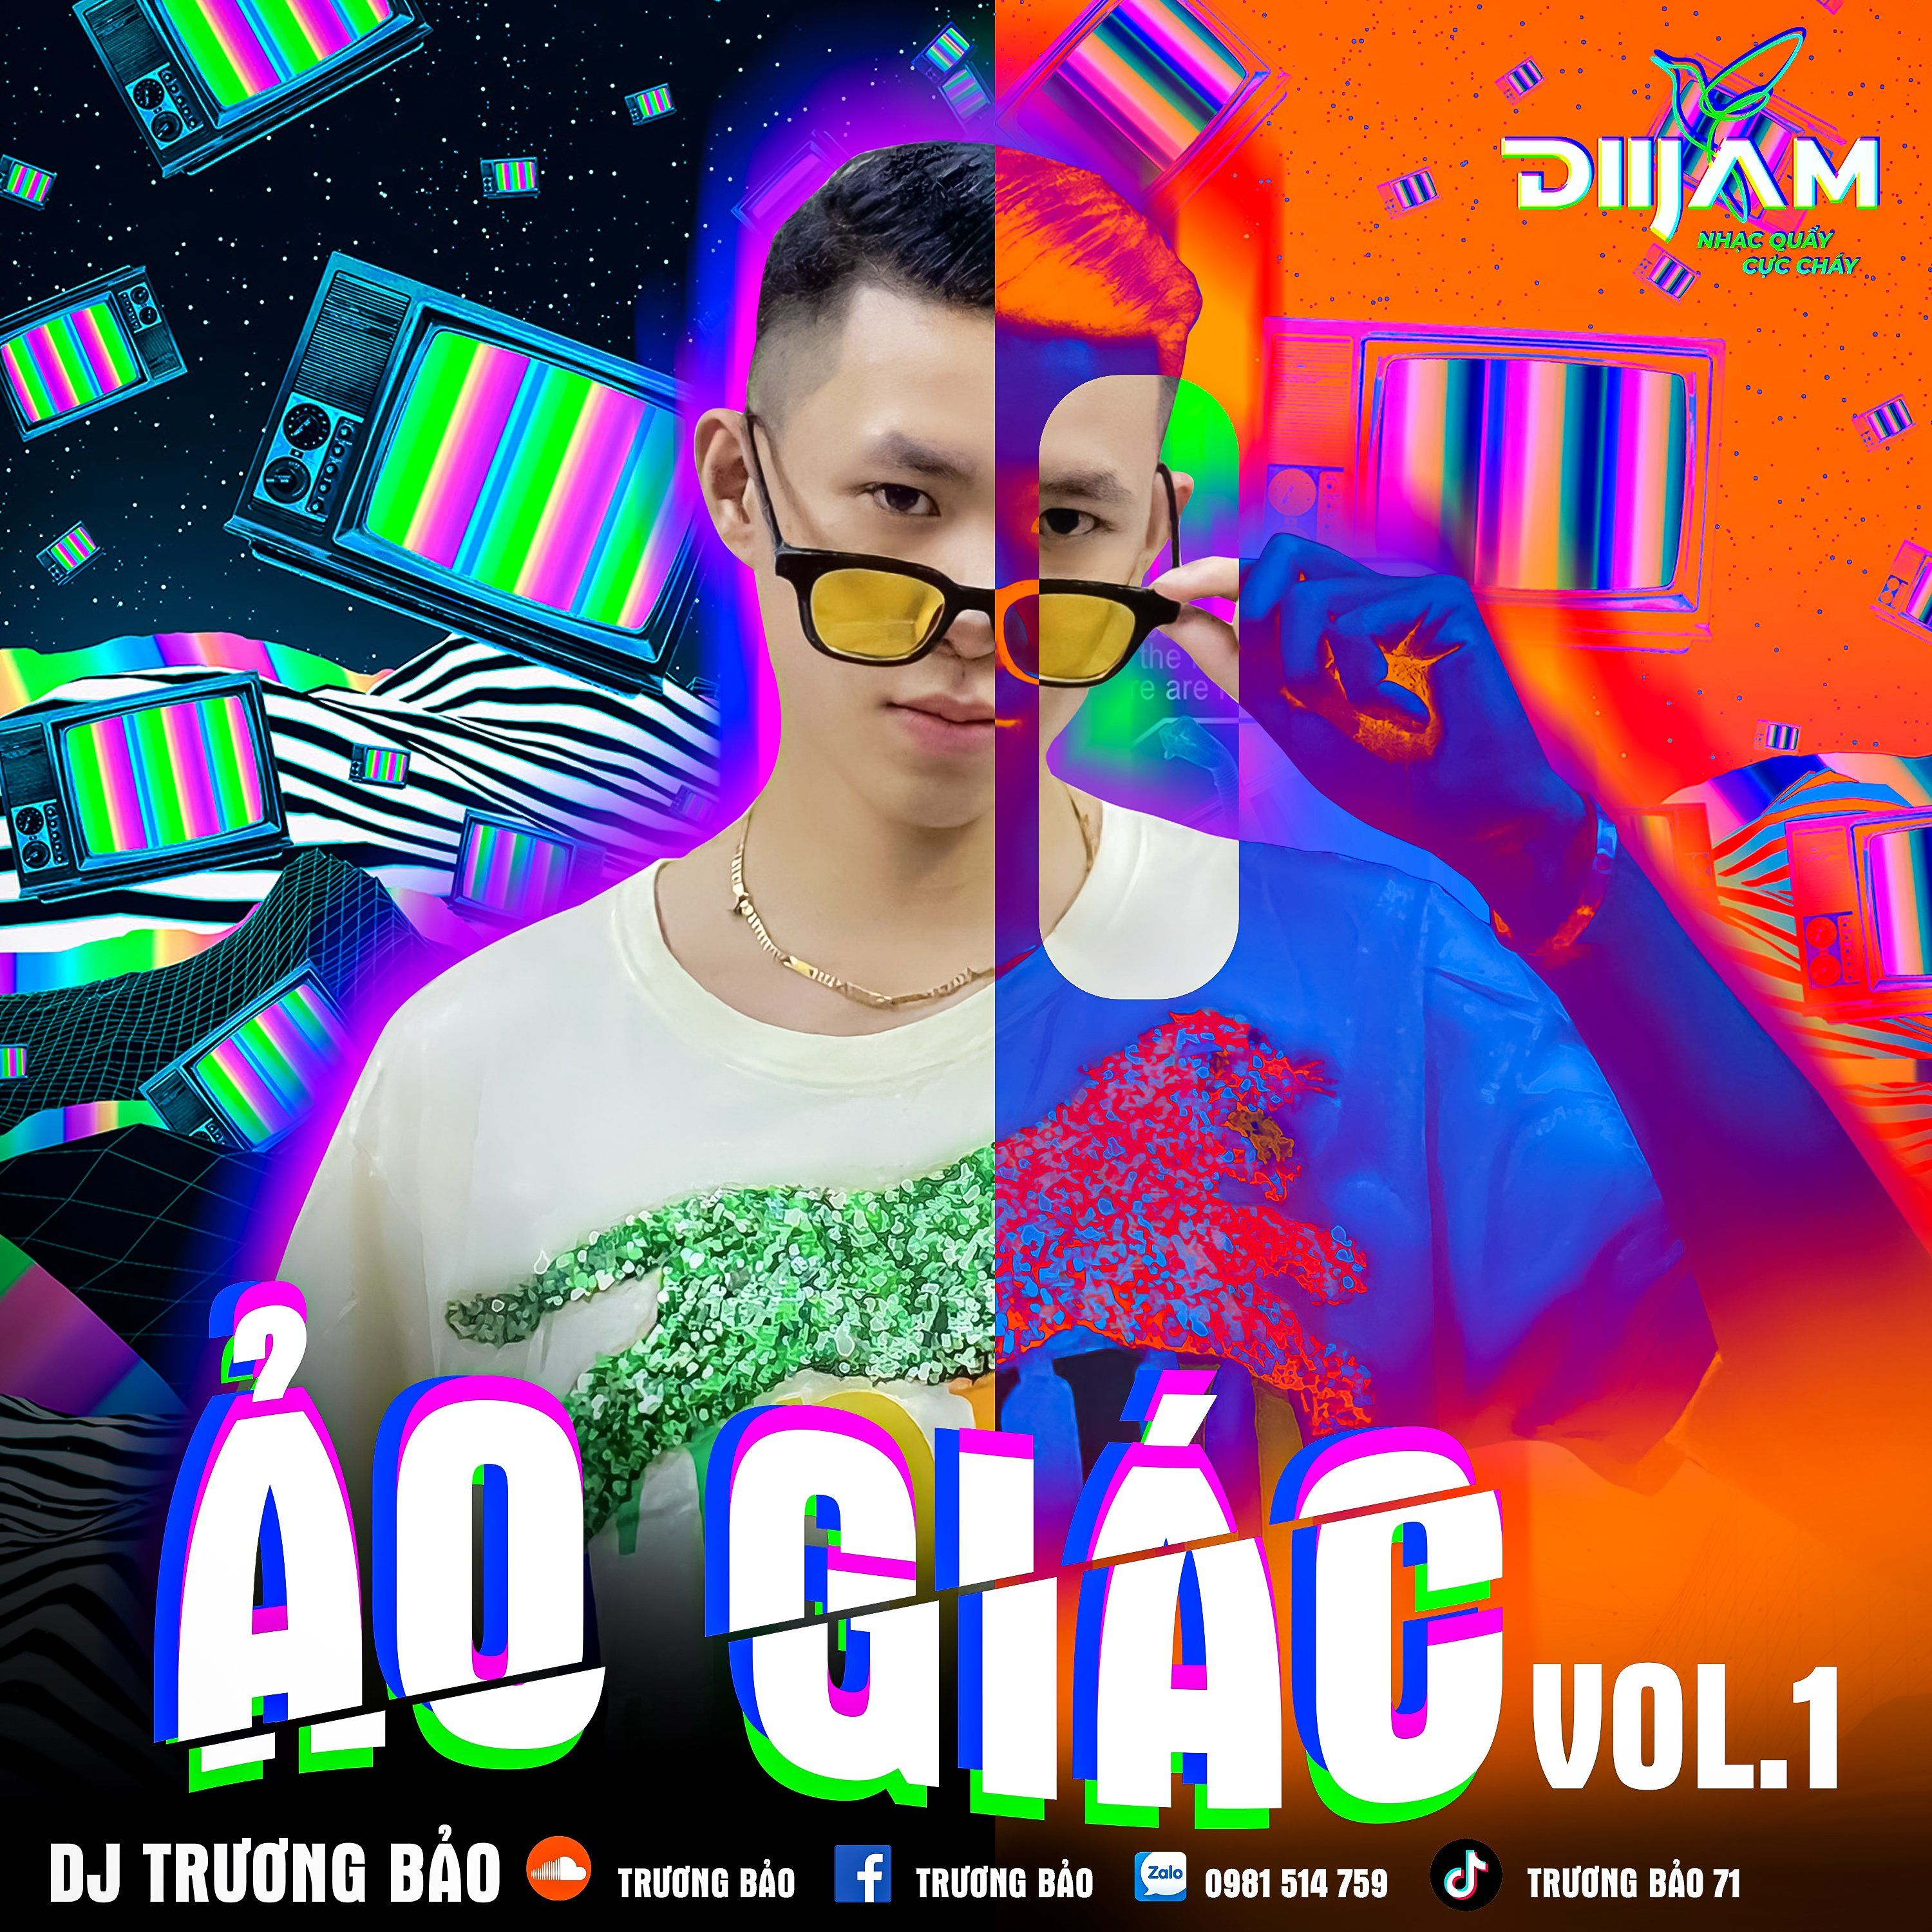 Tsitsani Ảo Giác Vol 1 - DJ Trương Bảo (Nonstop Diijam)